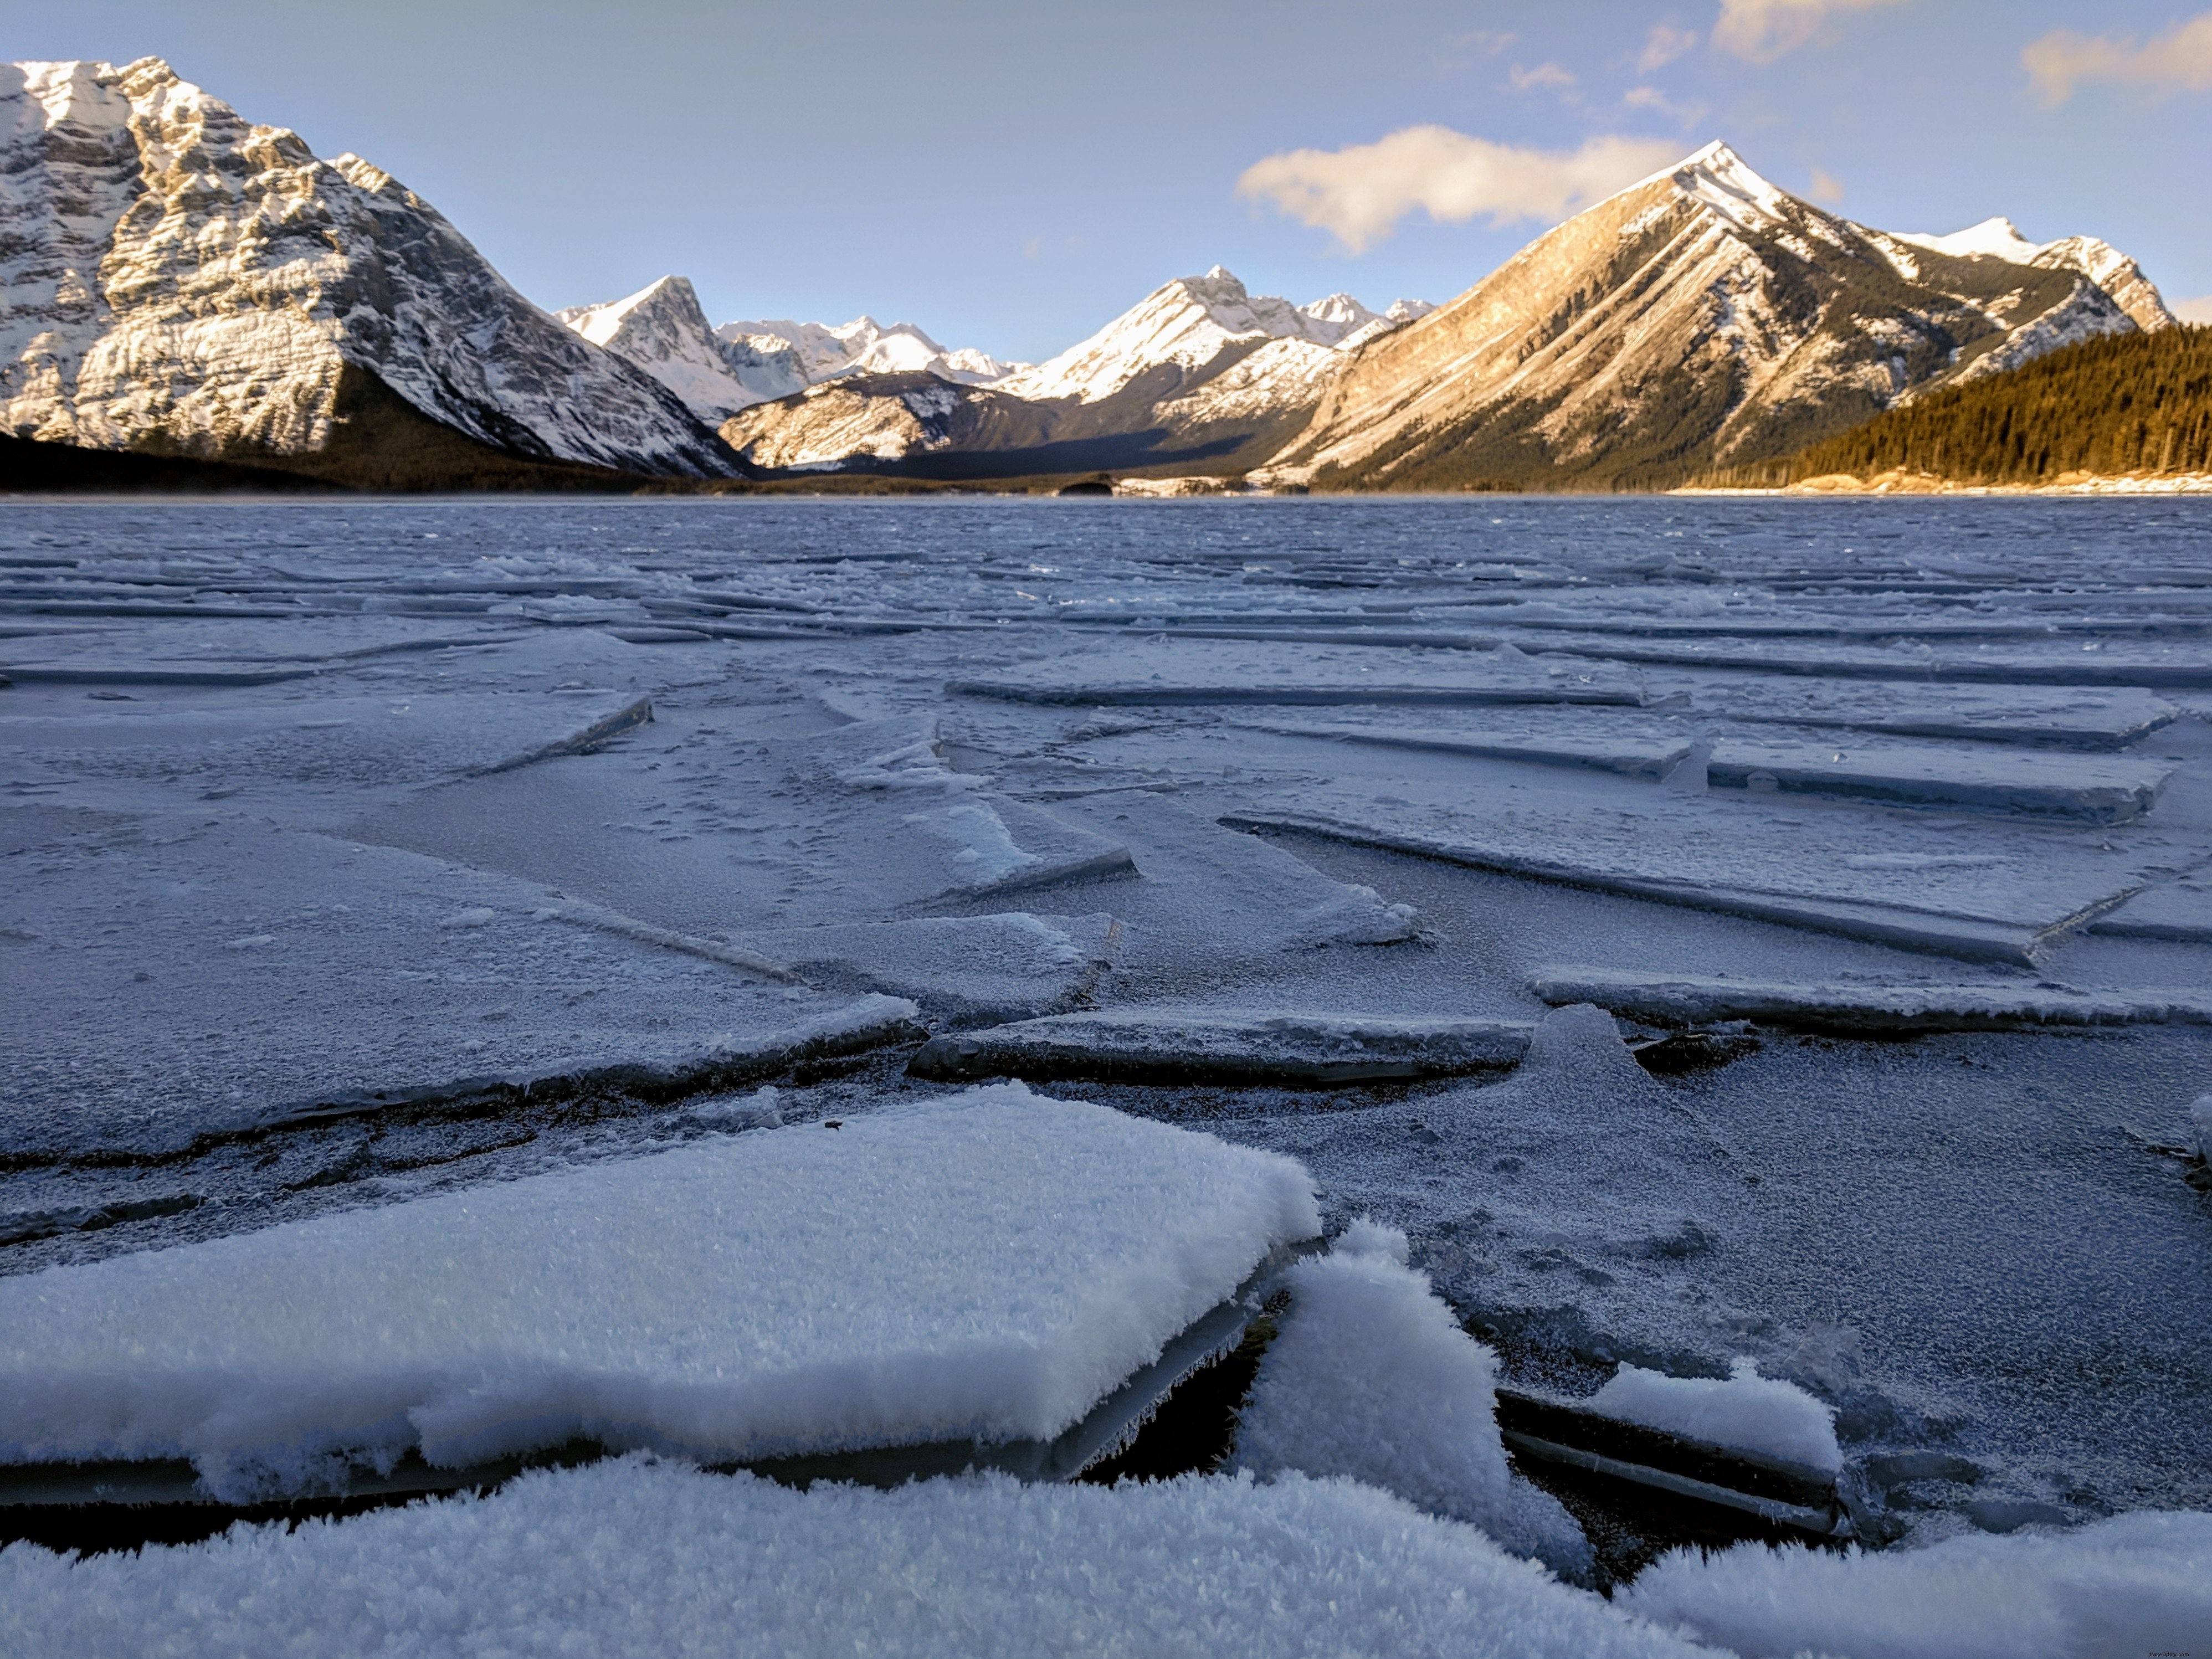 Des plaques de glace se sont formées sur une photo de lac gelé